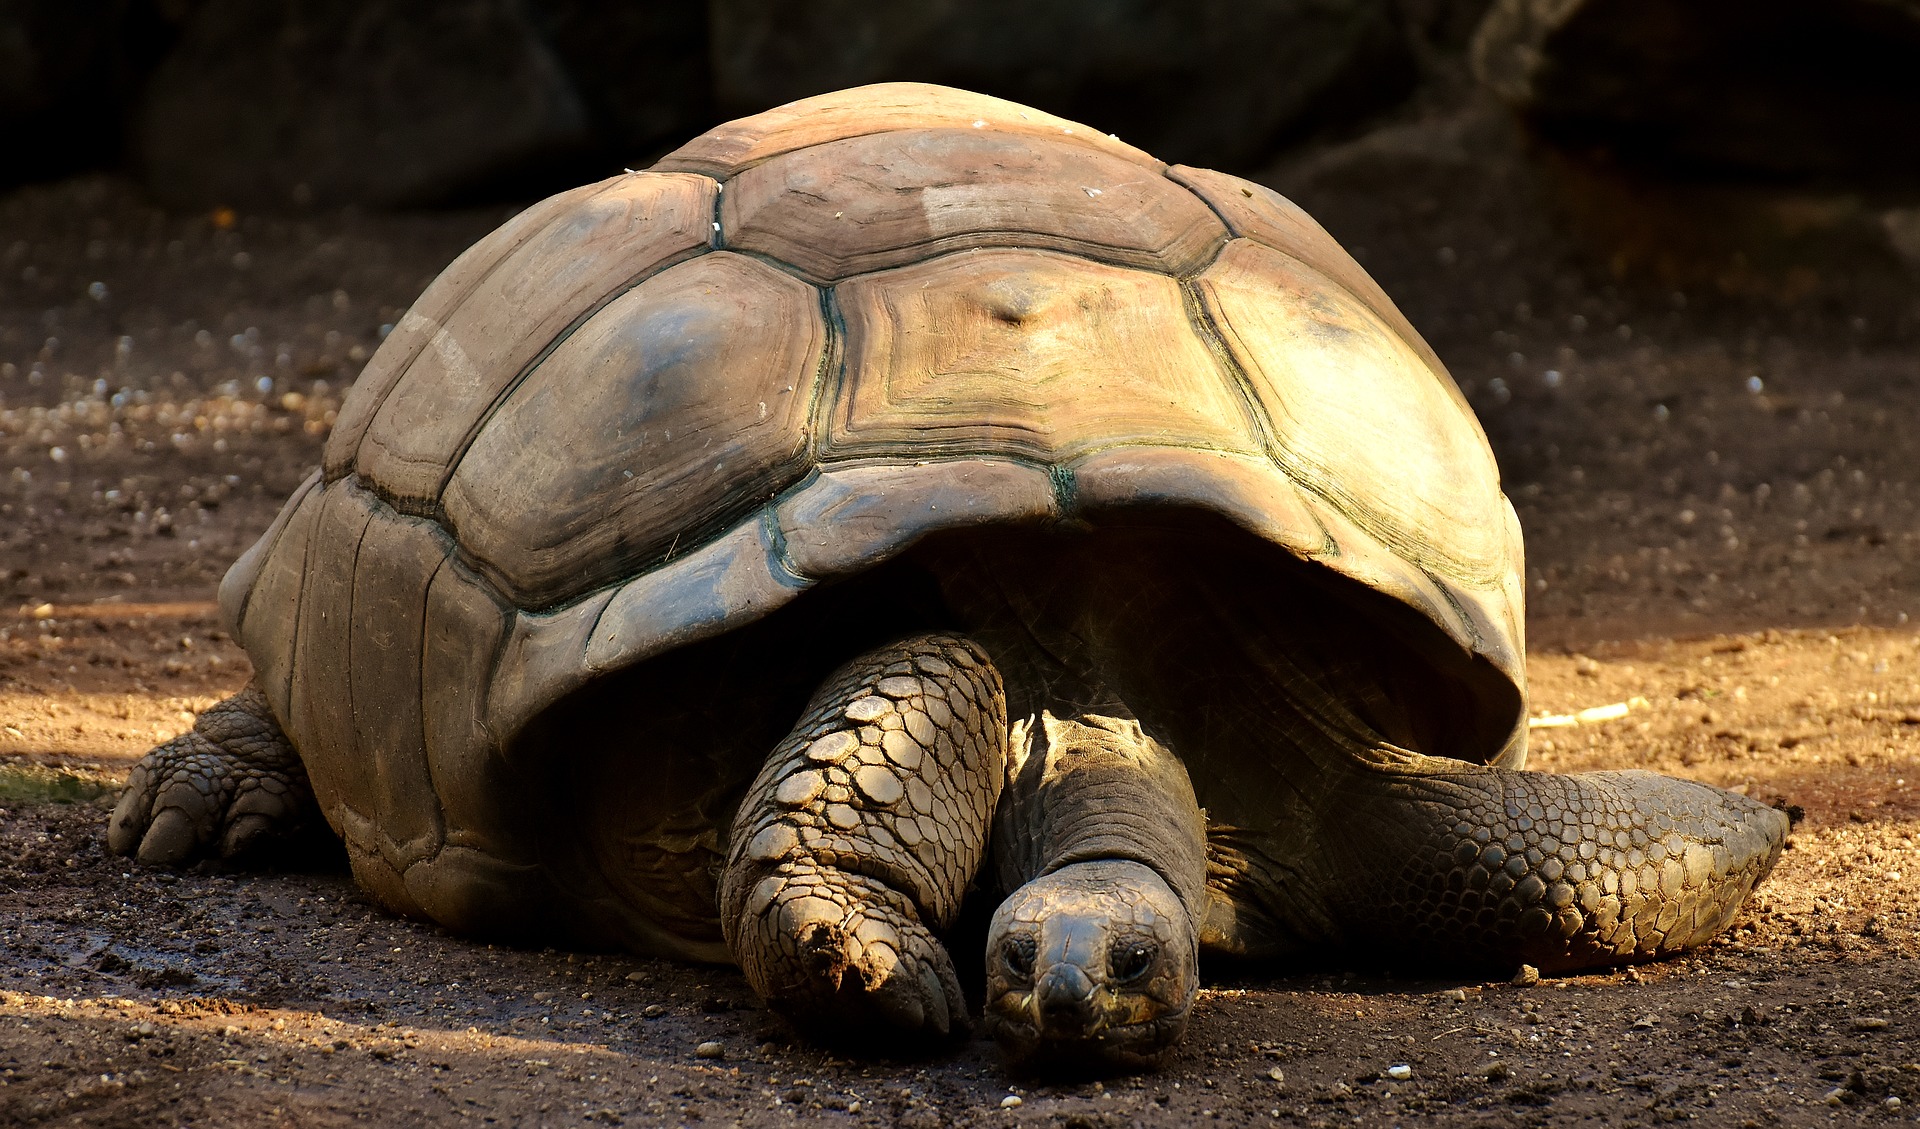 giant-tortoises-2872006_1920.jpg